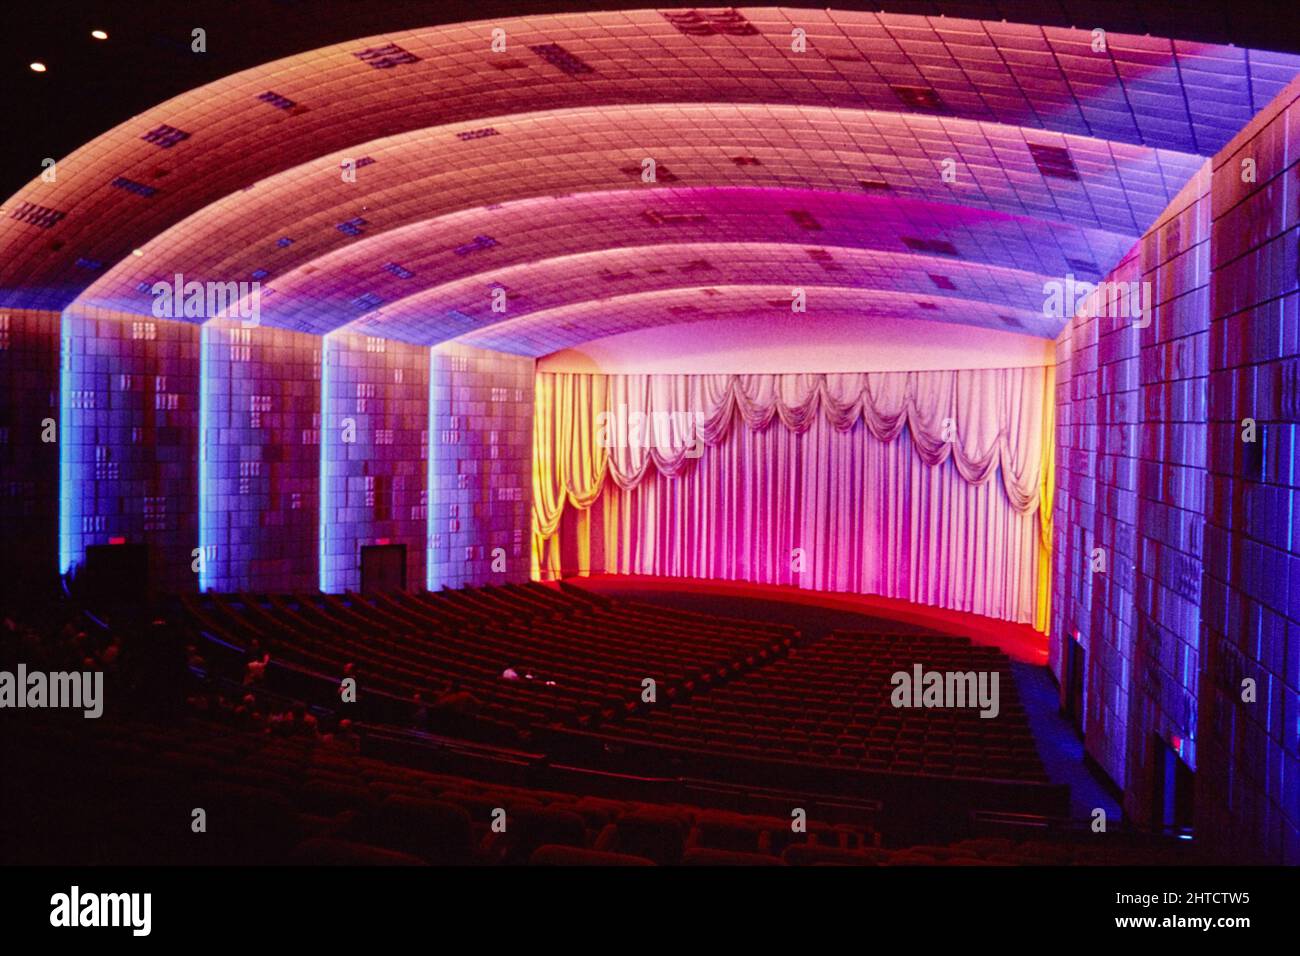 Empire Cinema, Leicester Square, City of Westminster, London, 1986. Das Auditorium von Screen 1 im Empire Cinema. Das Empire Theatre wurde 1884 eröffnet und von Thomas Verity entworfen. Fassade, Eingang und Auditorium wurden Ende des 19.. Und Anfang des 20.. Jahrhunderts neu gestaltet. Zwischen 1928 und 1961 hatte das Auditorium 3300 Sitzplätze. Nach 1962, als das Innere von George Coles umgestaltet wurde, wurden die ehemaligen Stände zu einer Tanzhalle, später zu einem Casino. Im Jahr 1980s wurde das Kino in drei Leinwände umgewandelt: Die ursprüngliche Leinwand 1 konnte 1330 Personen Platz bieten, das angrenzende Ritz-Kino wurde zu Geröll Stockfoto